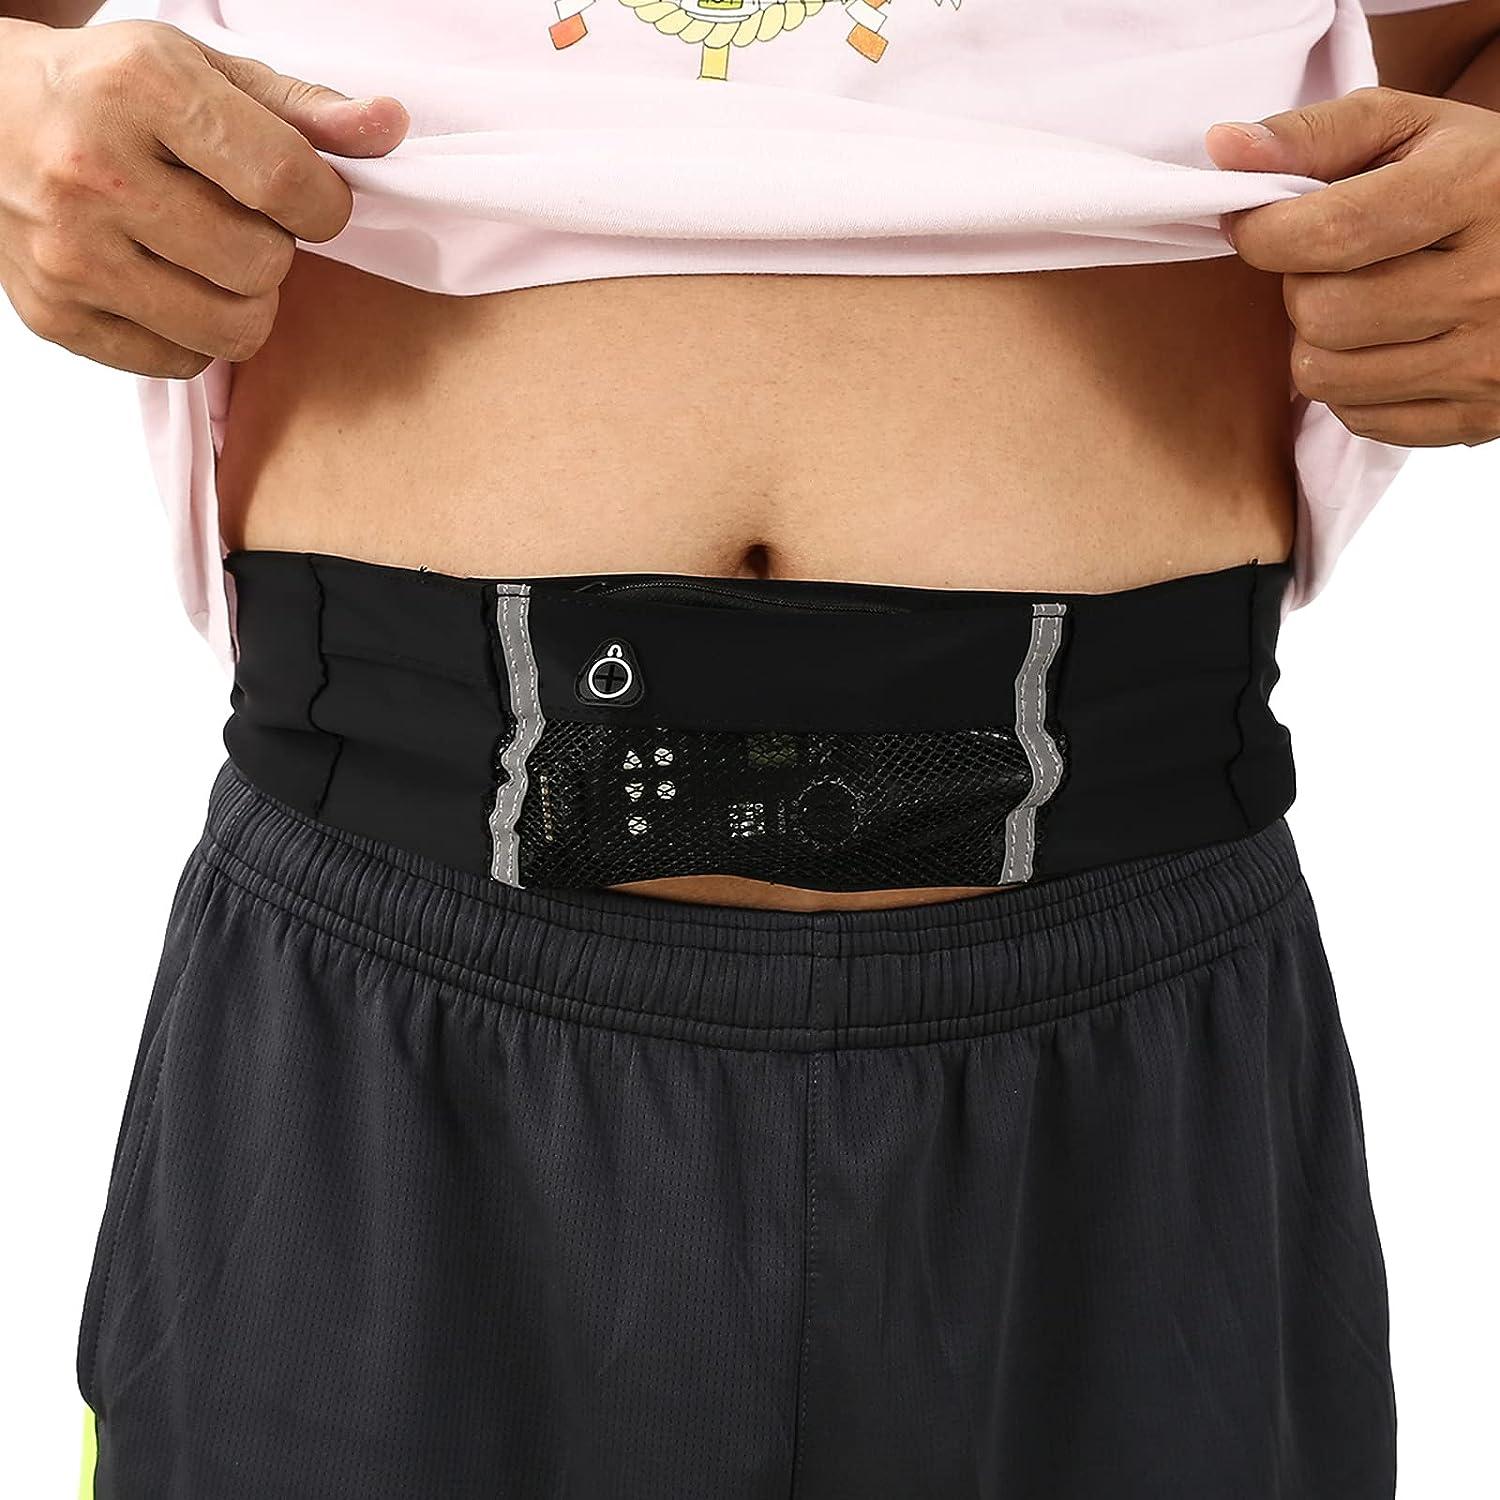 Insulin Pump Waist Belt Discreet Diabetic Waist Band Holder Diabetes  Supplies Pouch and Accessories for Running & Travel